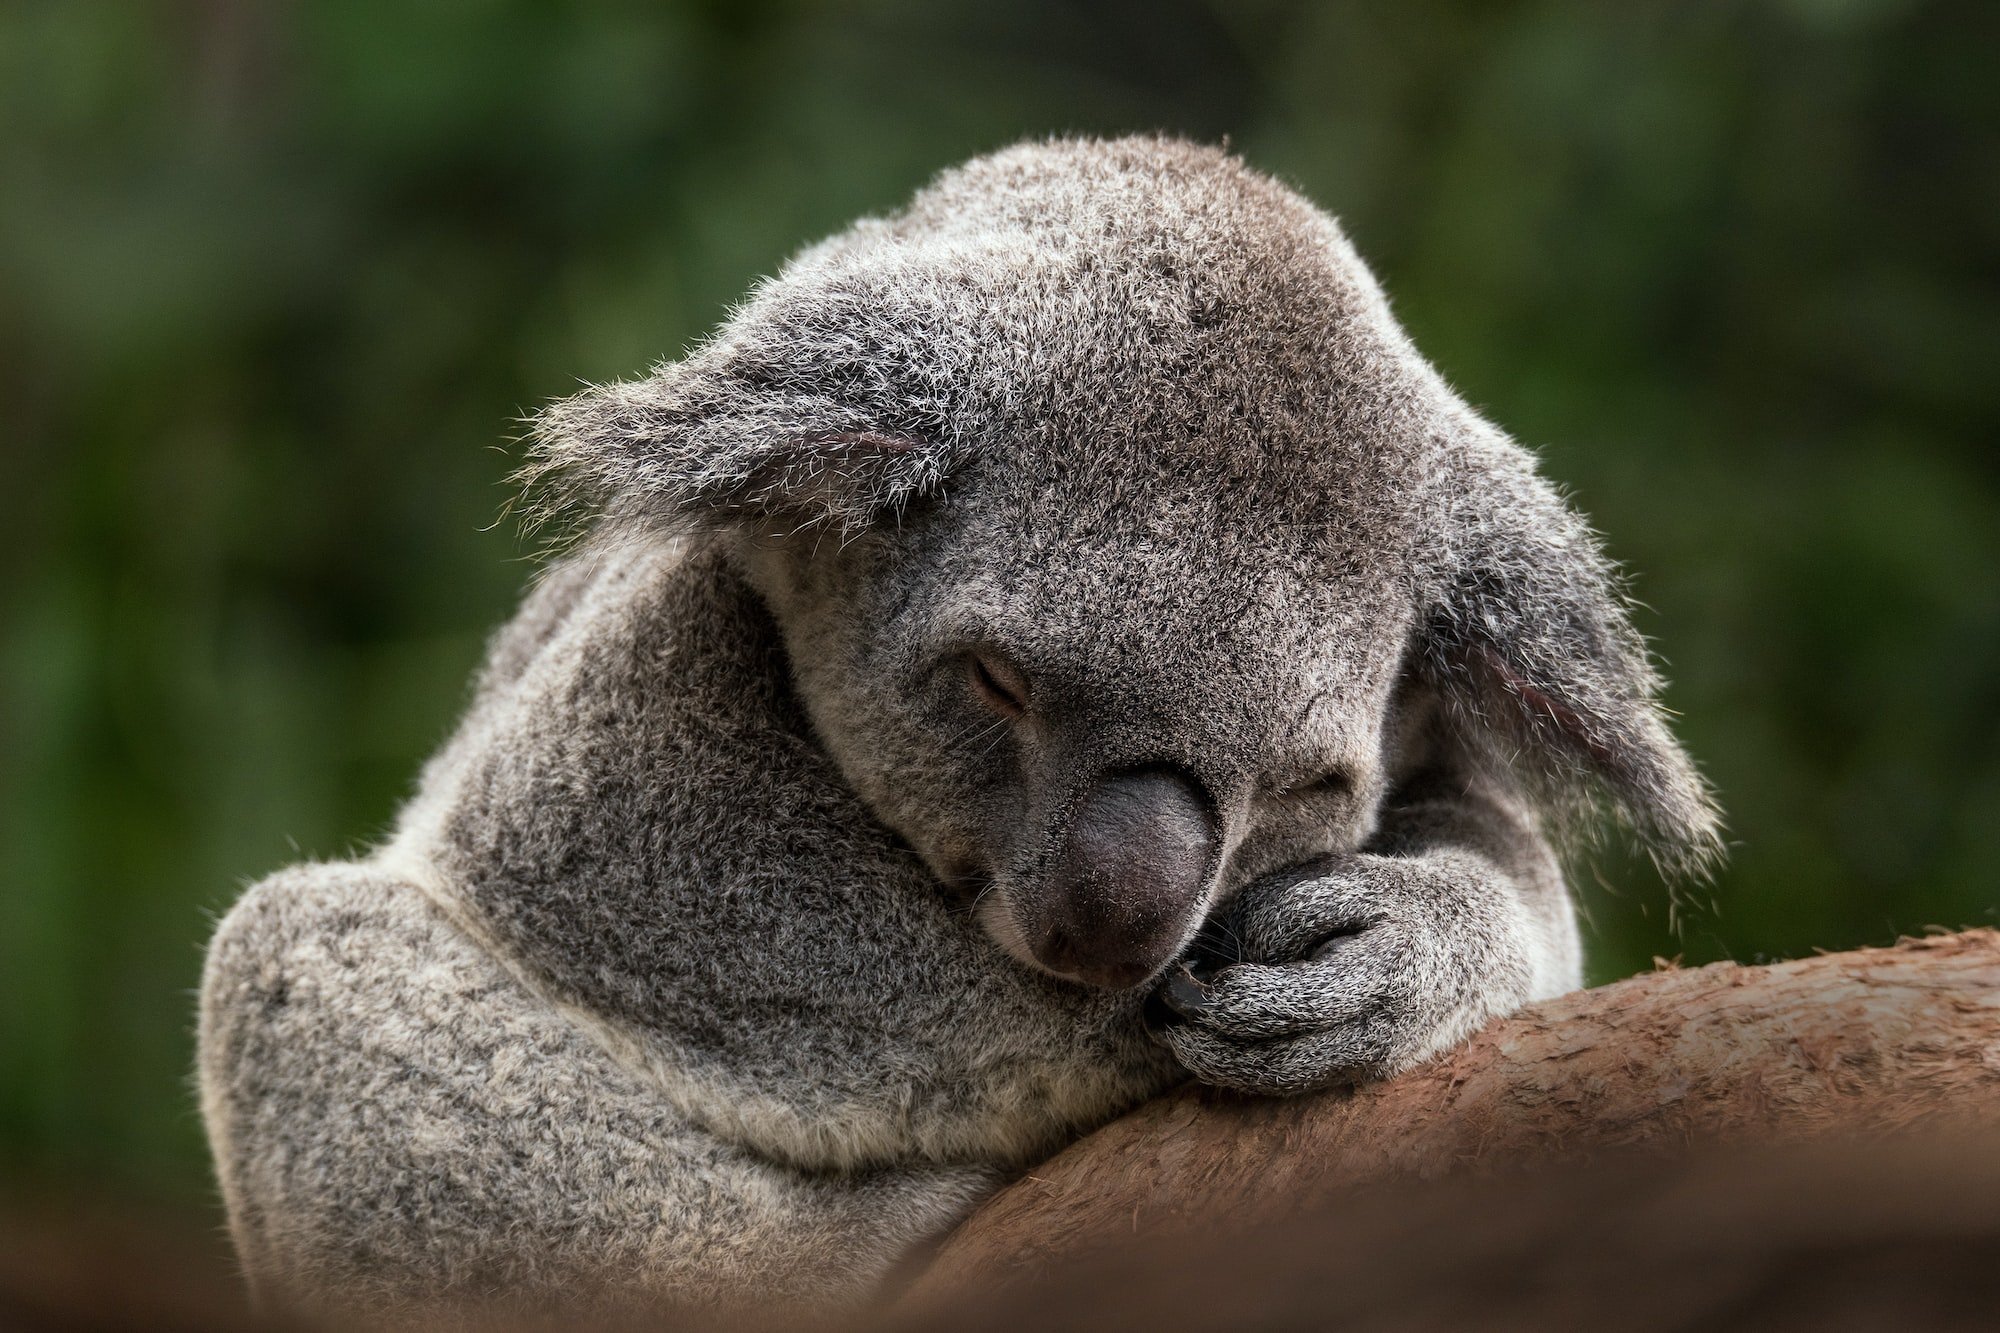 Koala Bear sleeping on a branch